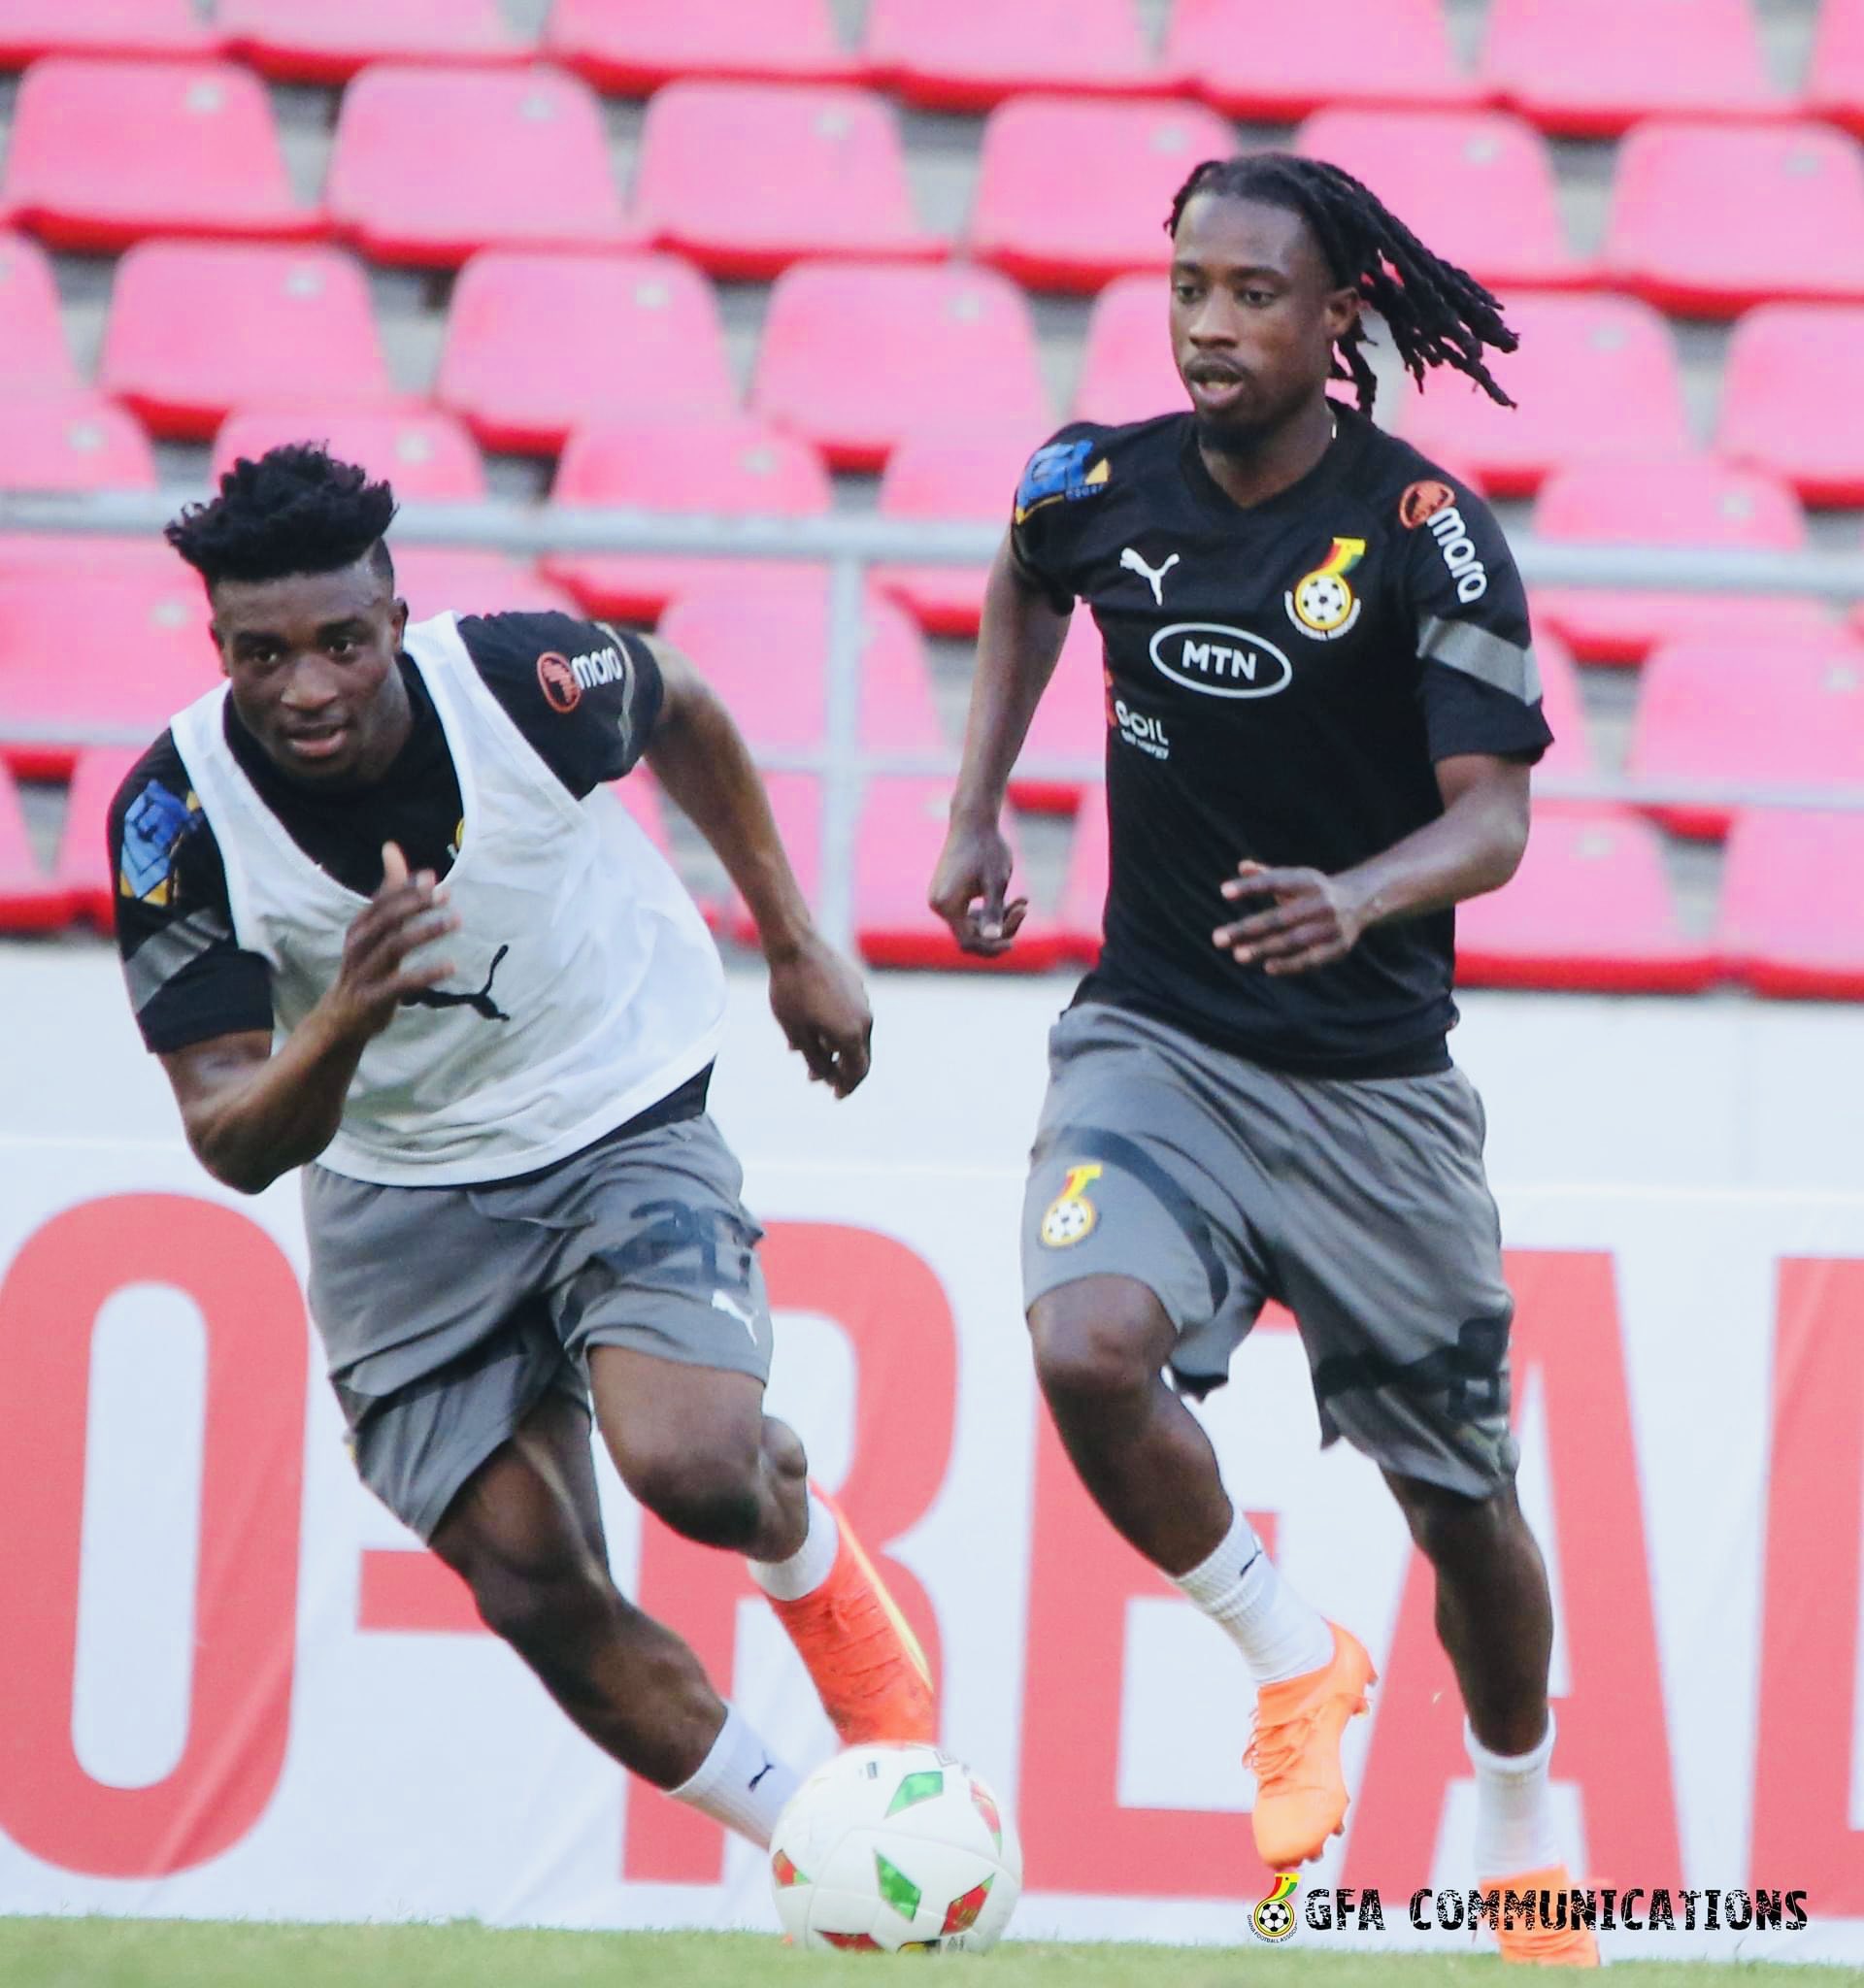 PHOTOS: Black Stars train at Estádio 11 de Novembro ahead of Angola return leg tomorrow